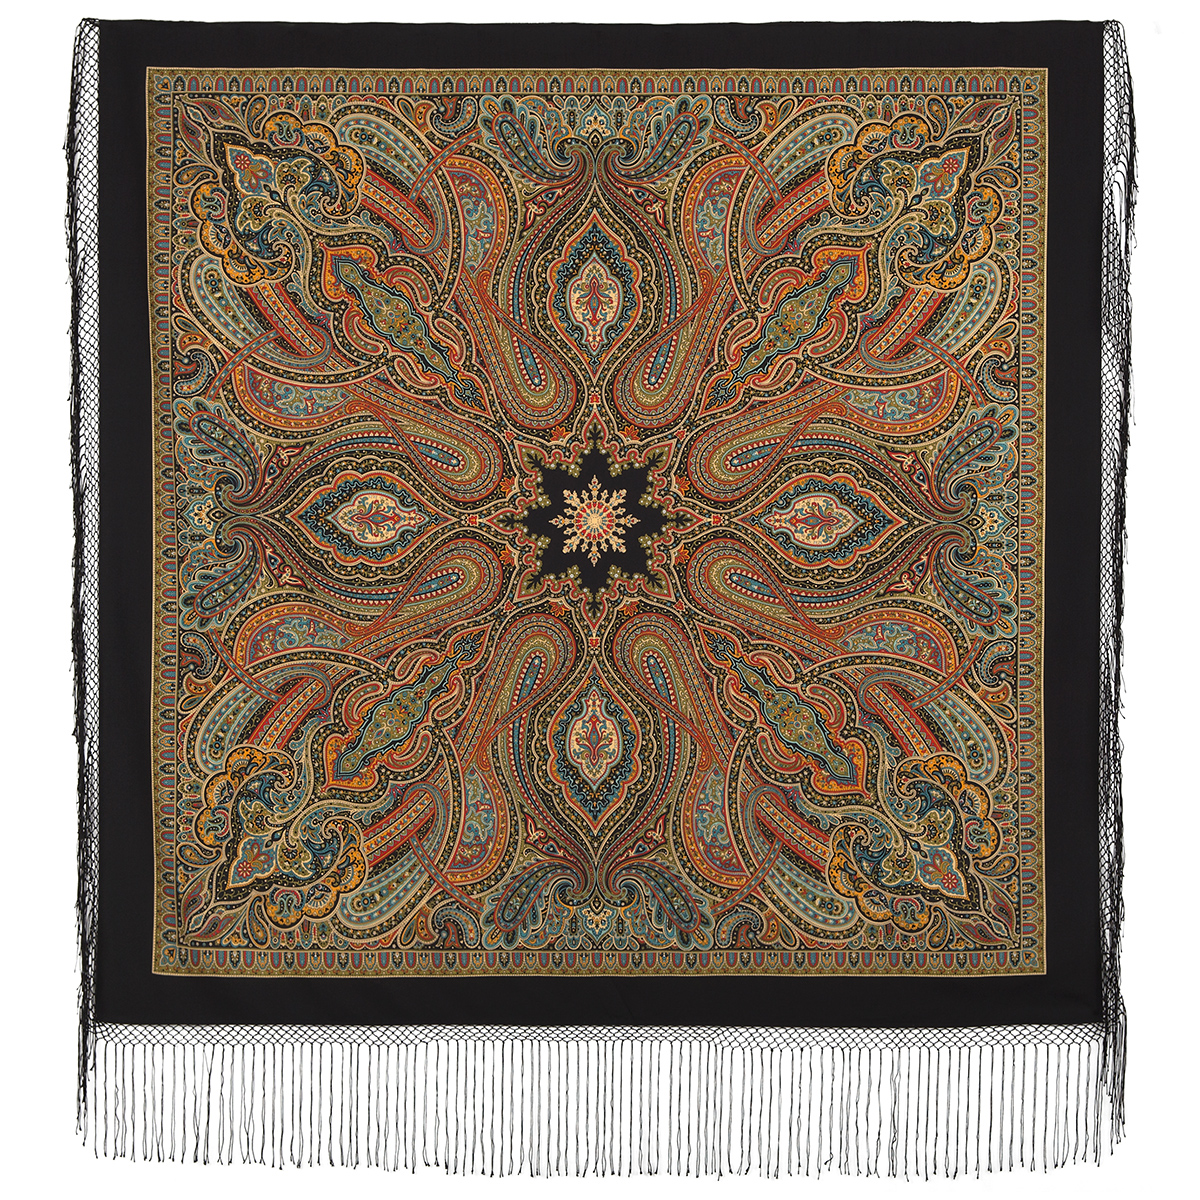 Платок женский Павловопосадский платок 1539 черный, 148х148 см